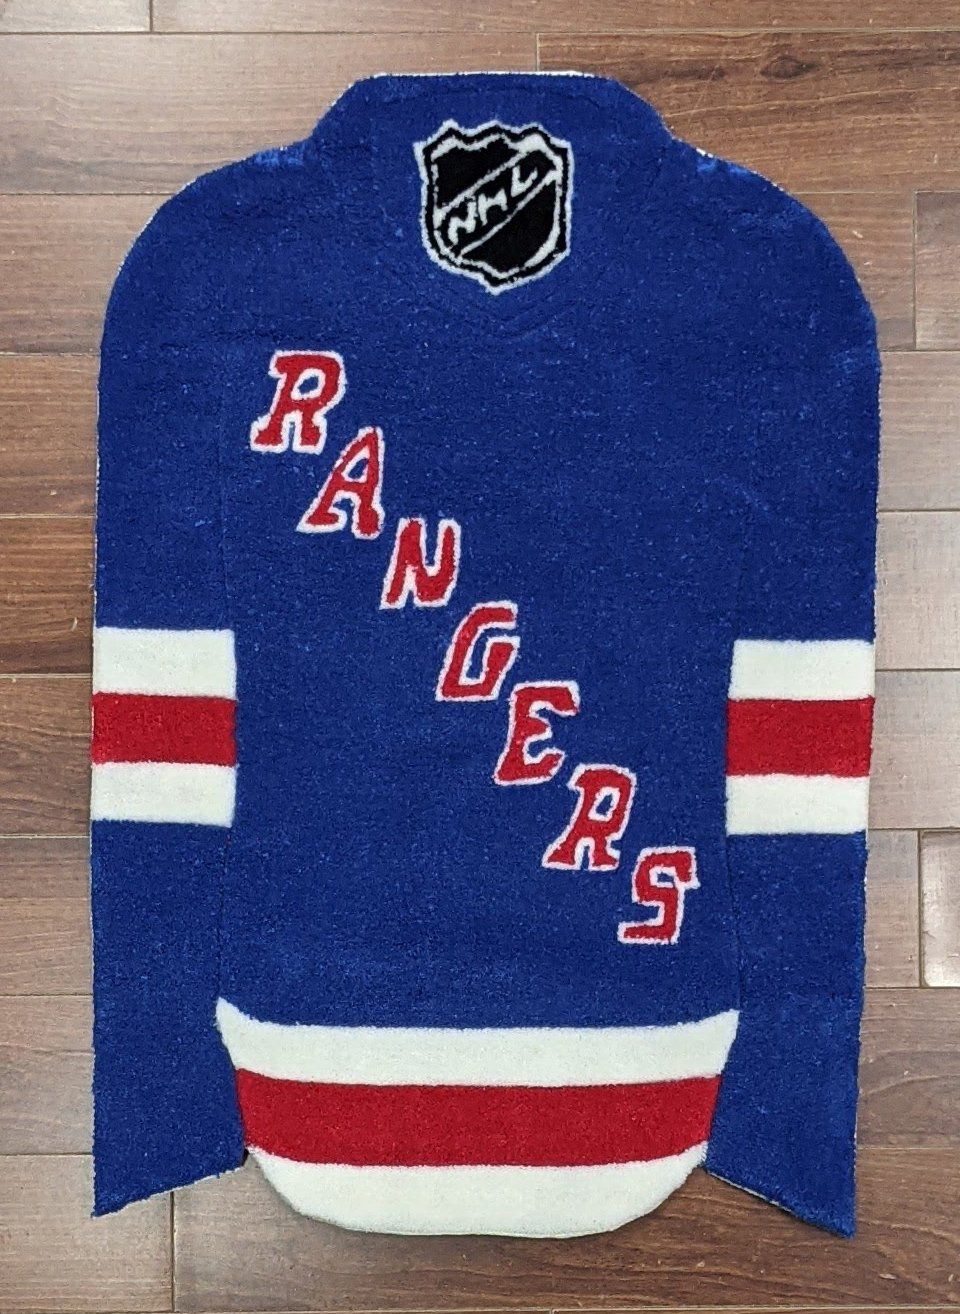 NHL New York Rangers